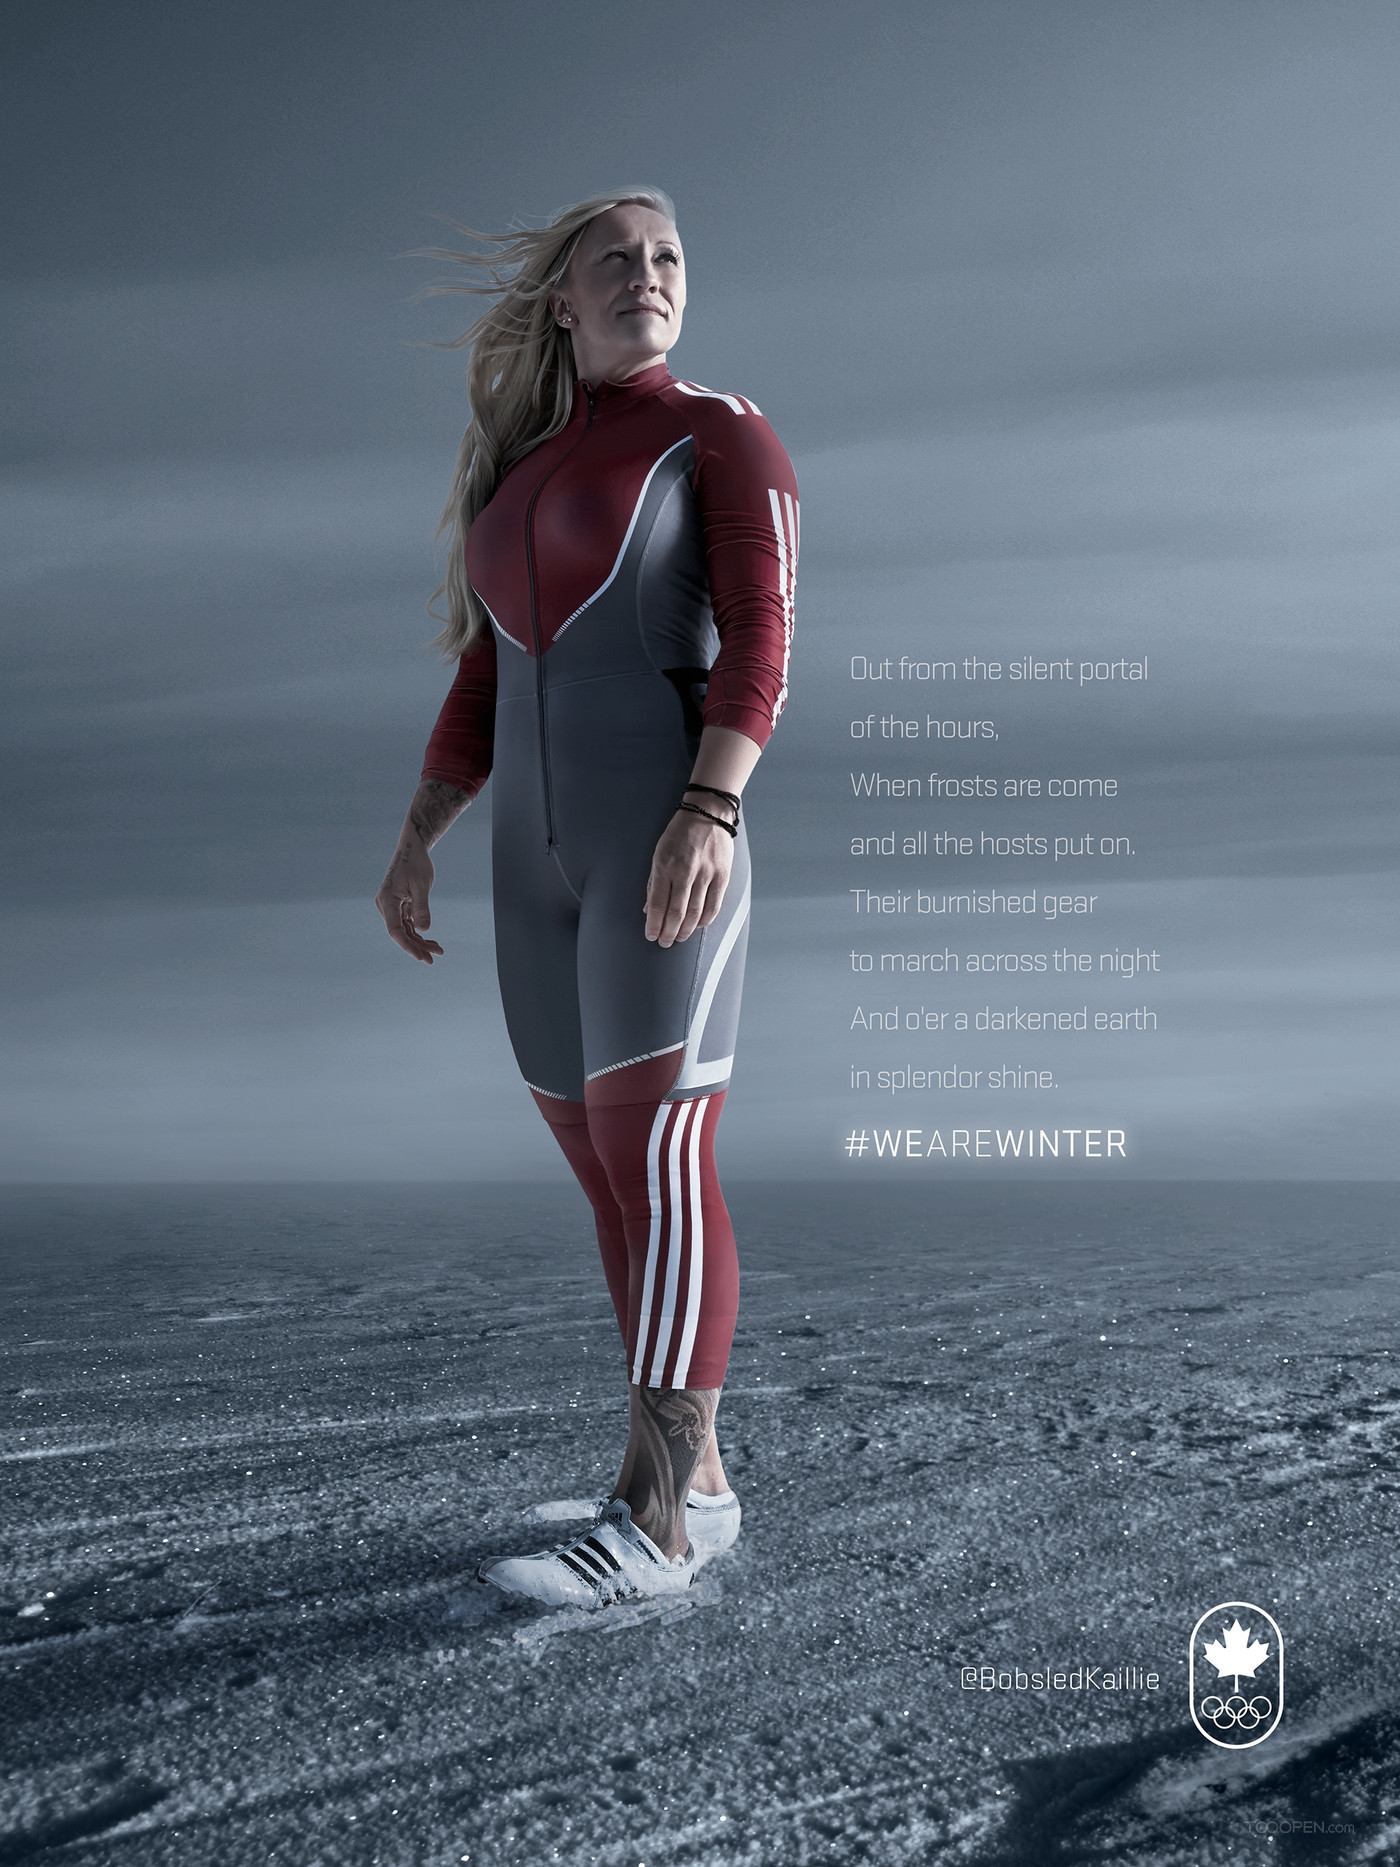 加拿大奥林匹克委员会平面广告设计欣赏-05